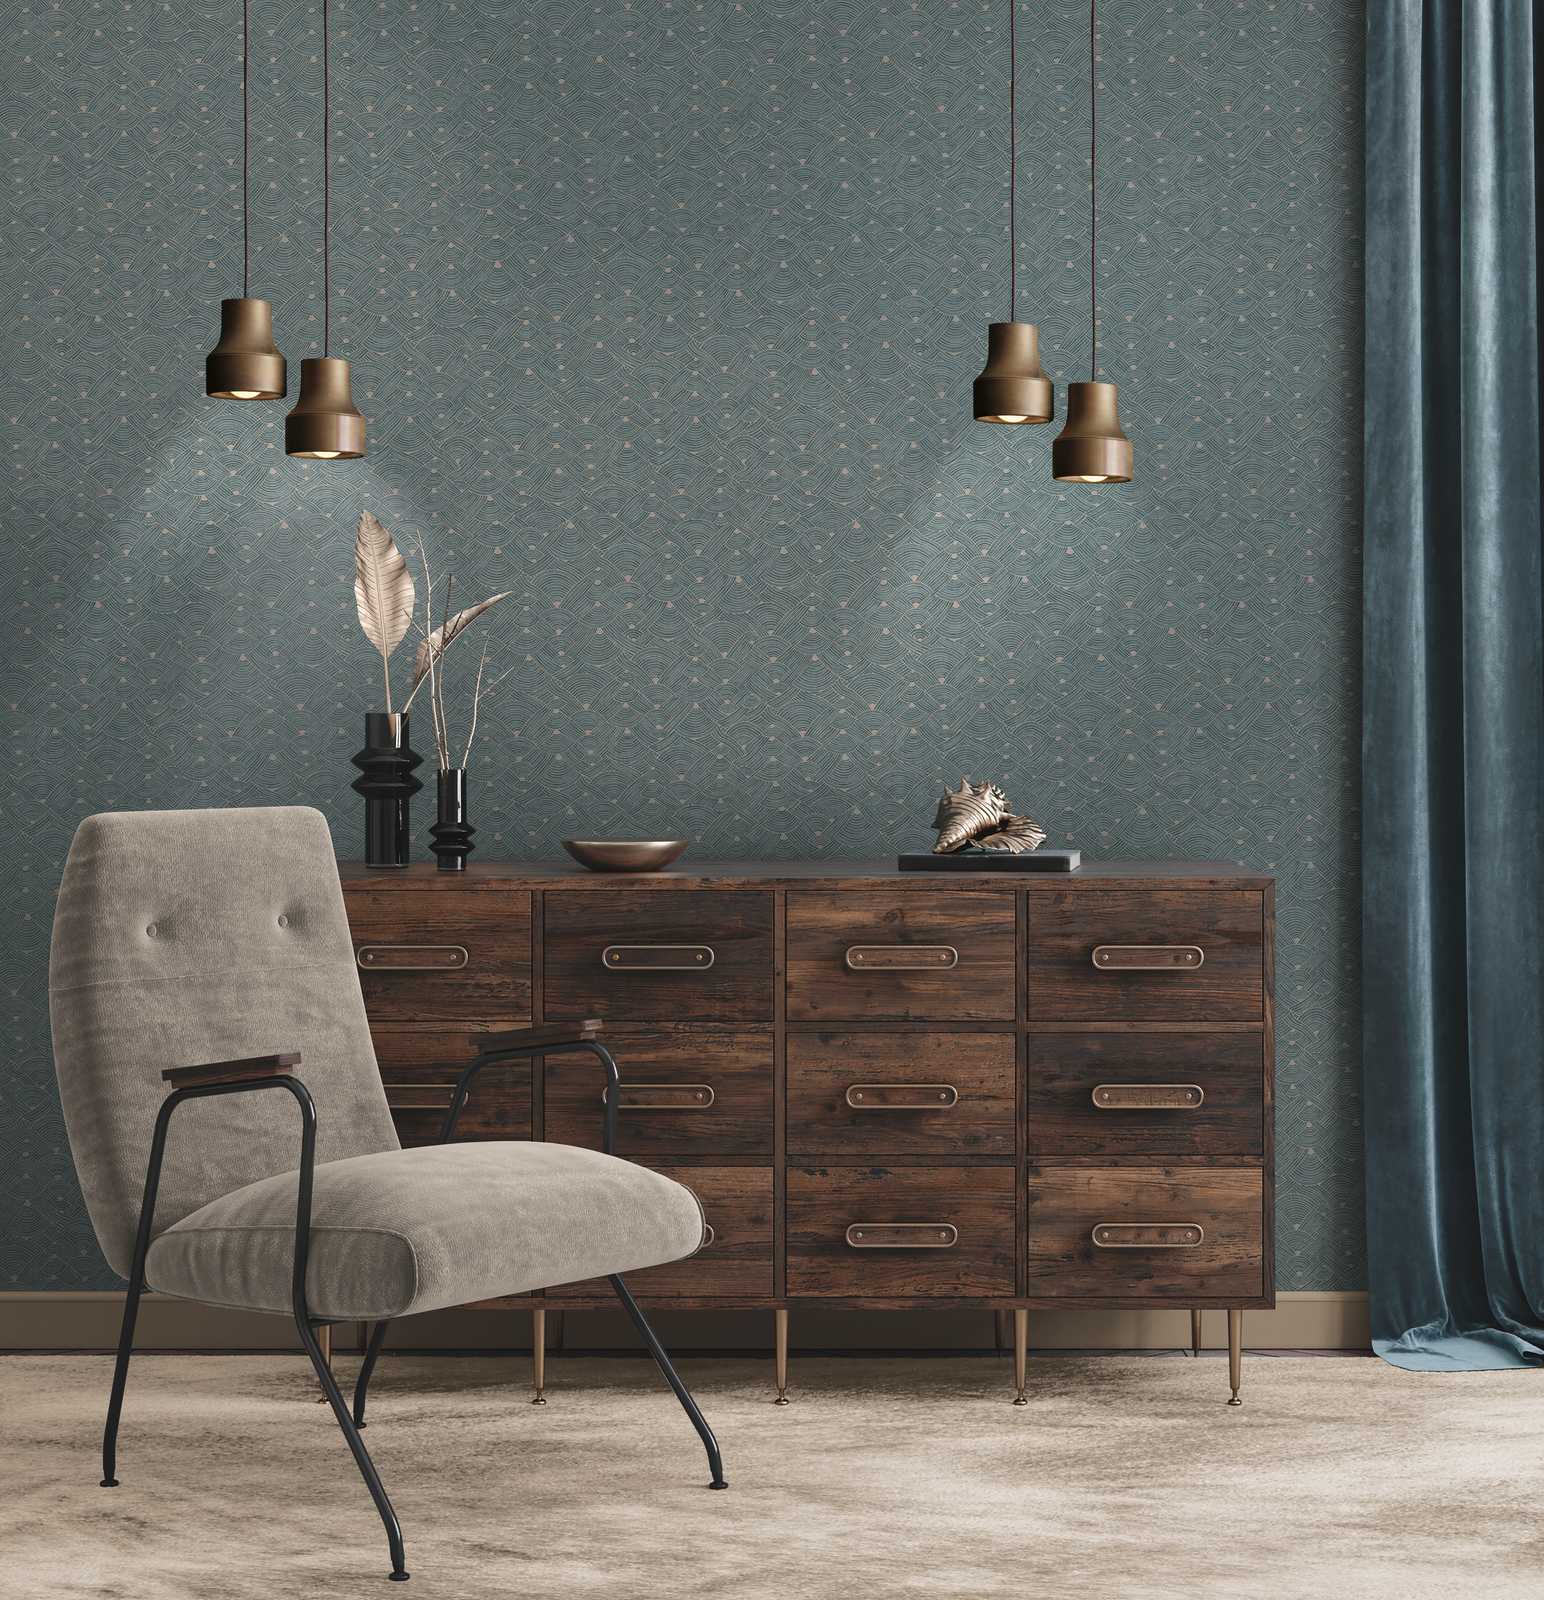             Papier peint intissé Ethno Design avec aspect corbeille - bleu, gris, beige
        